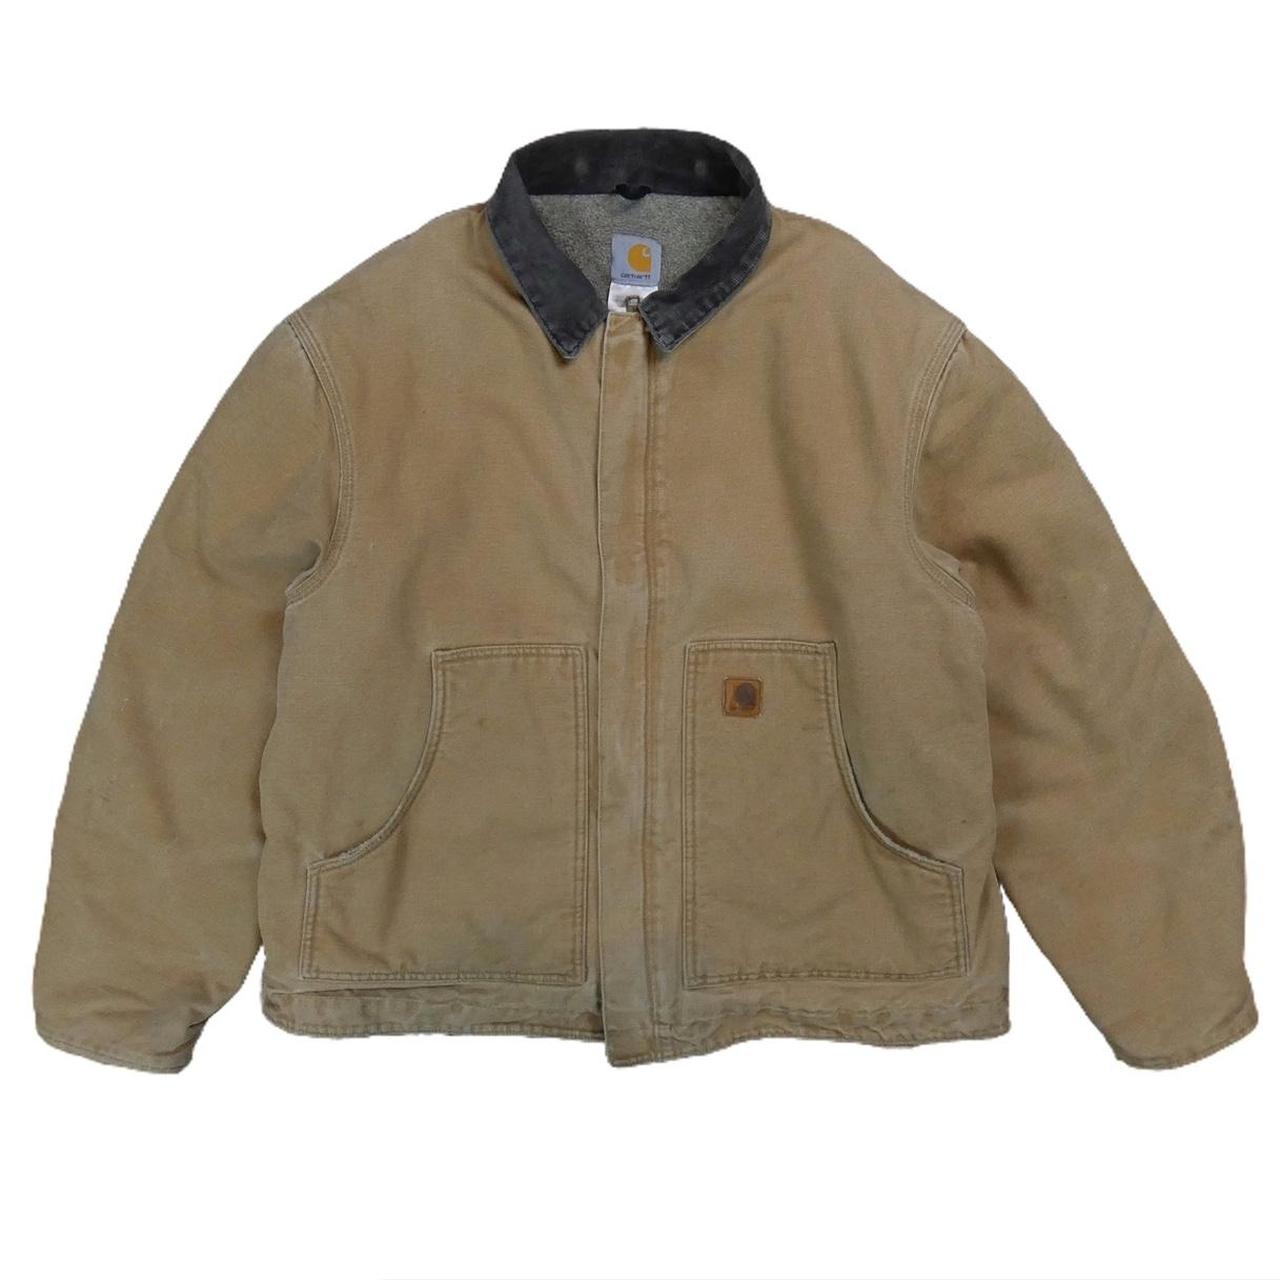 Carhartt Detroit workwear beige jacket Soft fleece... - Depop